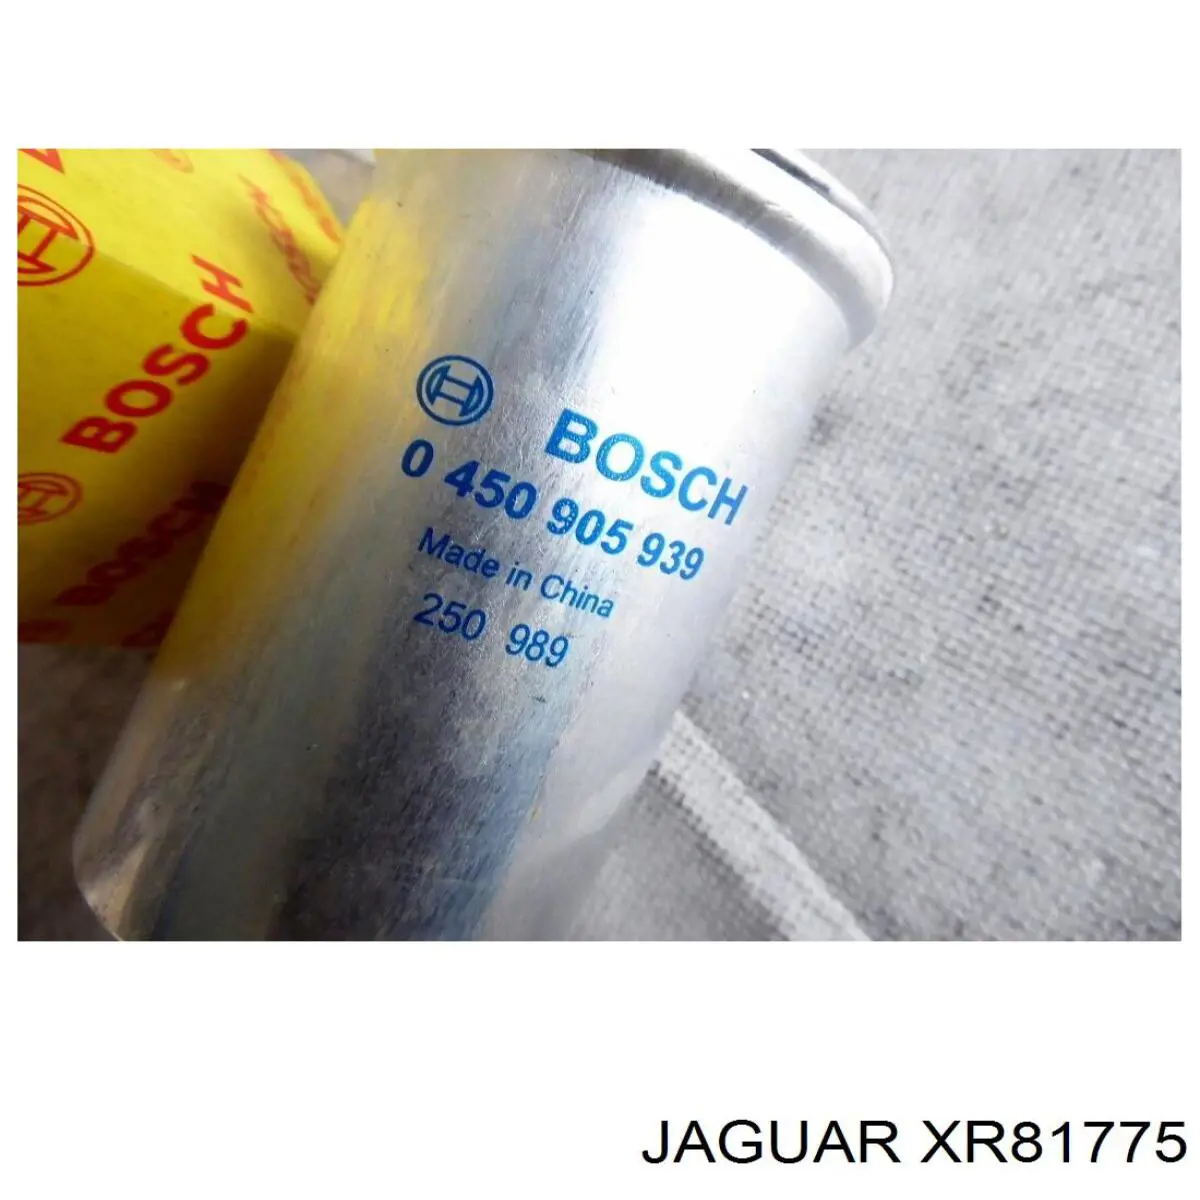 XR81775 Jaguar filtro combustible